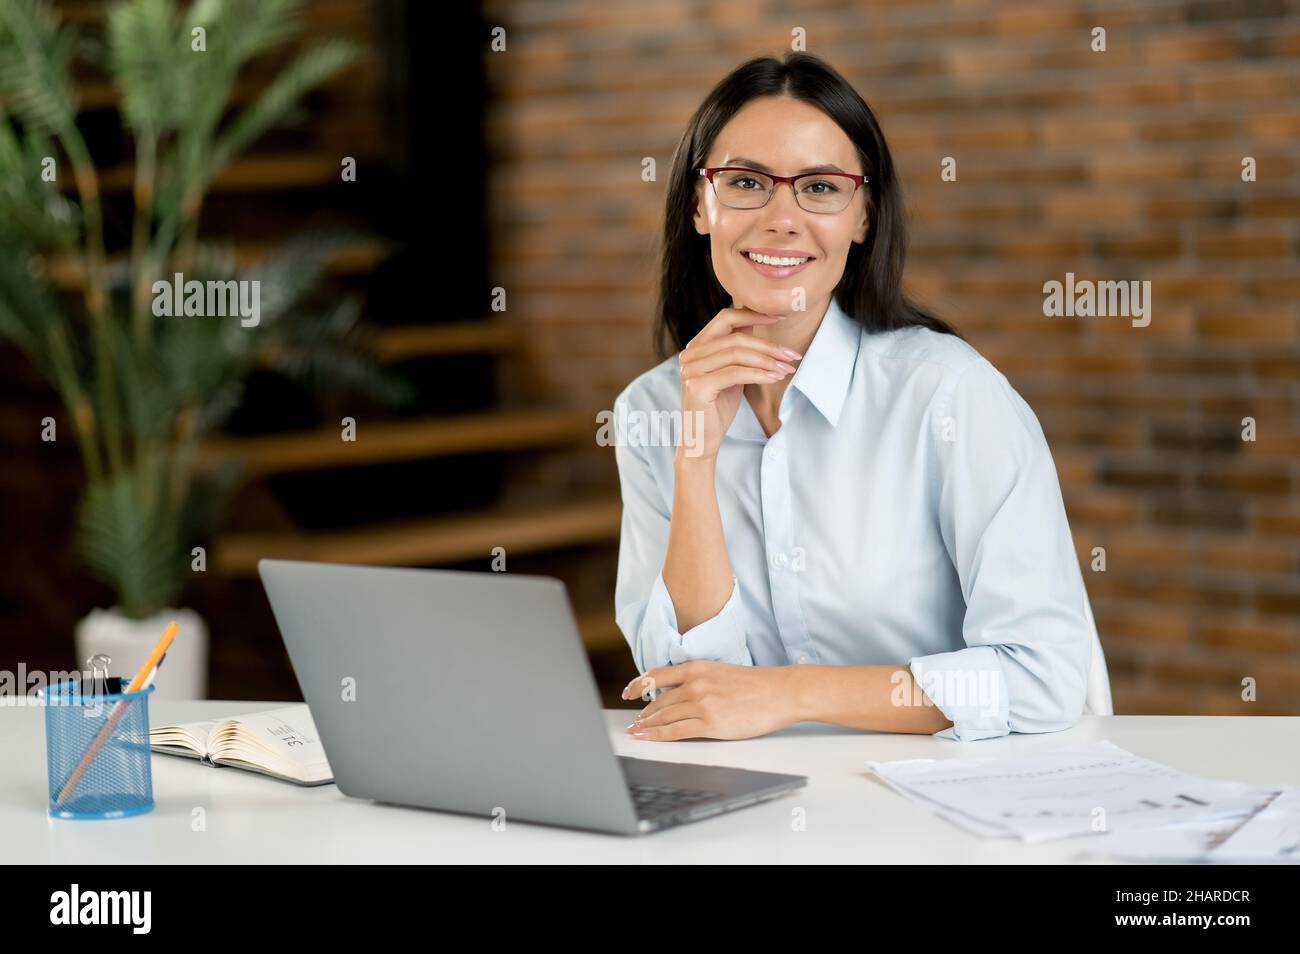 Smarte, selbstbewusste, erfolgreiche kaukasische Geschäftsfrau, geschäftsführerin oder Geschäftsführerin mit Brille, sitzt im Büro, mit einem Laptop, in stilvoller Kleidung, blickt auf die Kamera und lächelt Stockfoto